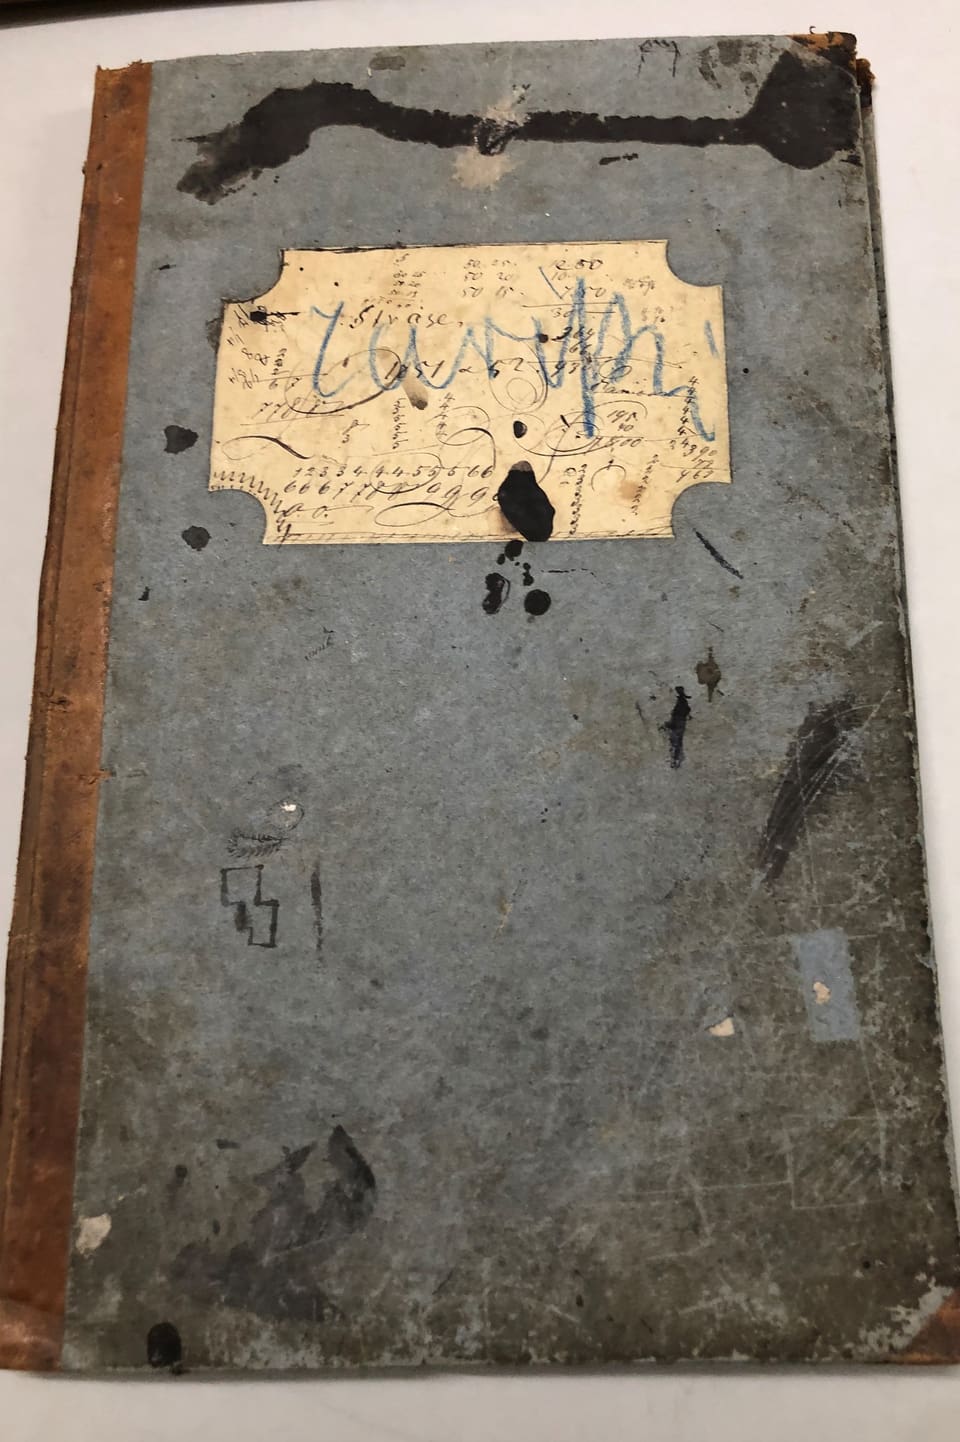 Il cudesch da contabilitad da Johannes Badrutt che cuntegna era copias da brevs e skizzas.